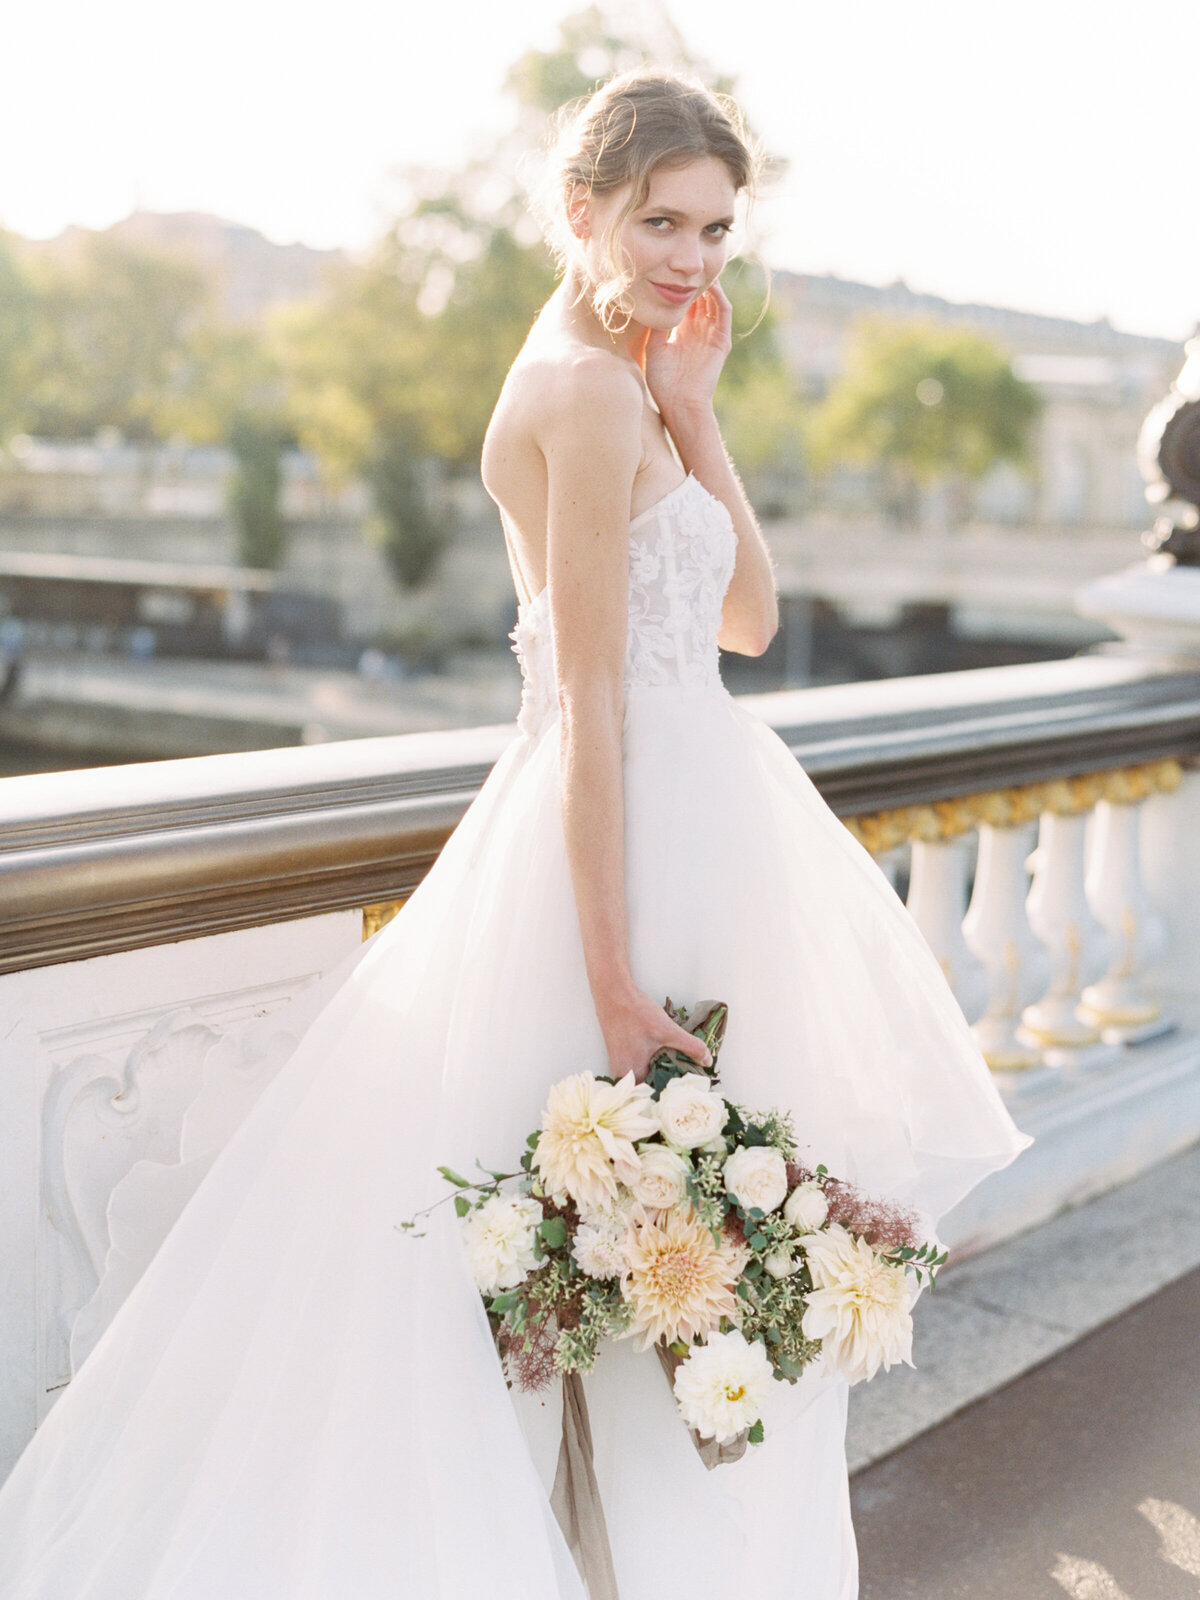 petit-palais-elopement-paris-wedding-photographer-mackenzie-reiter-photography-pont-alexandre-bridge-paris-france-58